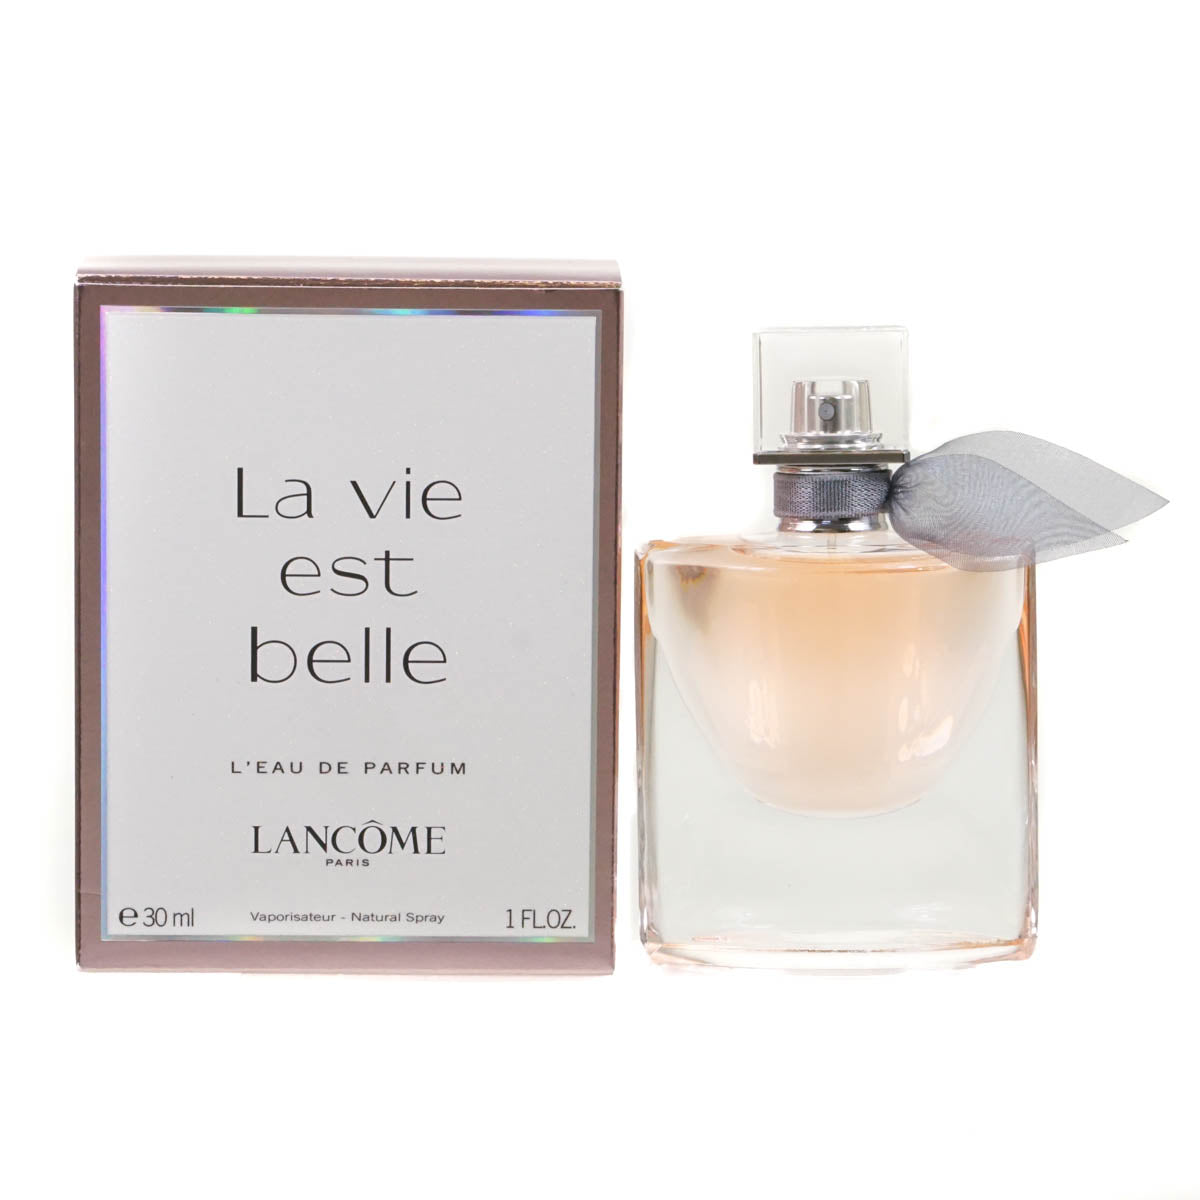 Lancome La Vie Est Belle 30ml L'Eau De Parfum (Blemished Box)